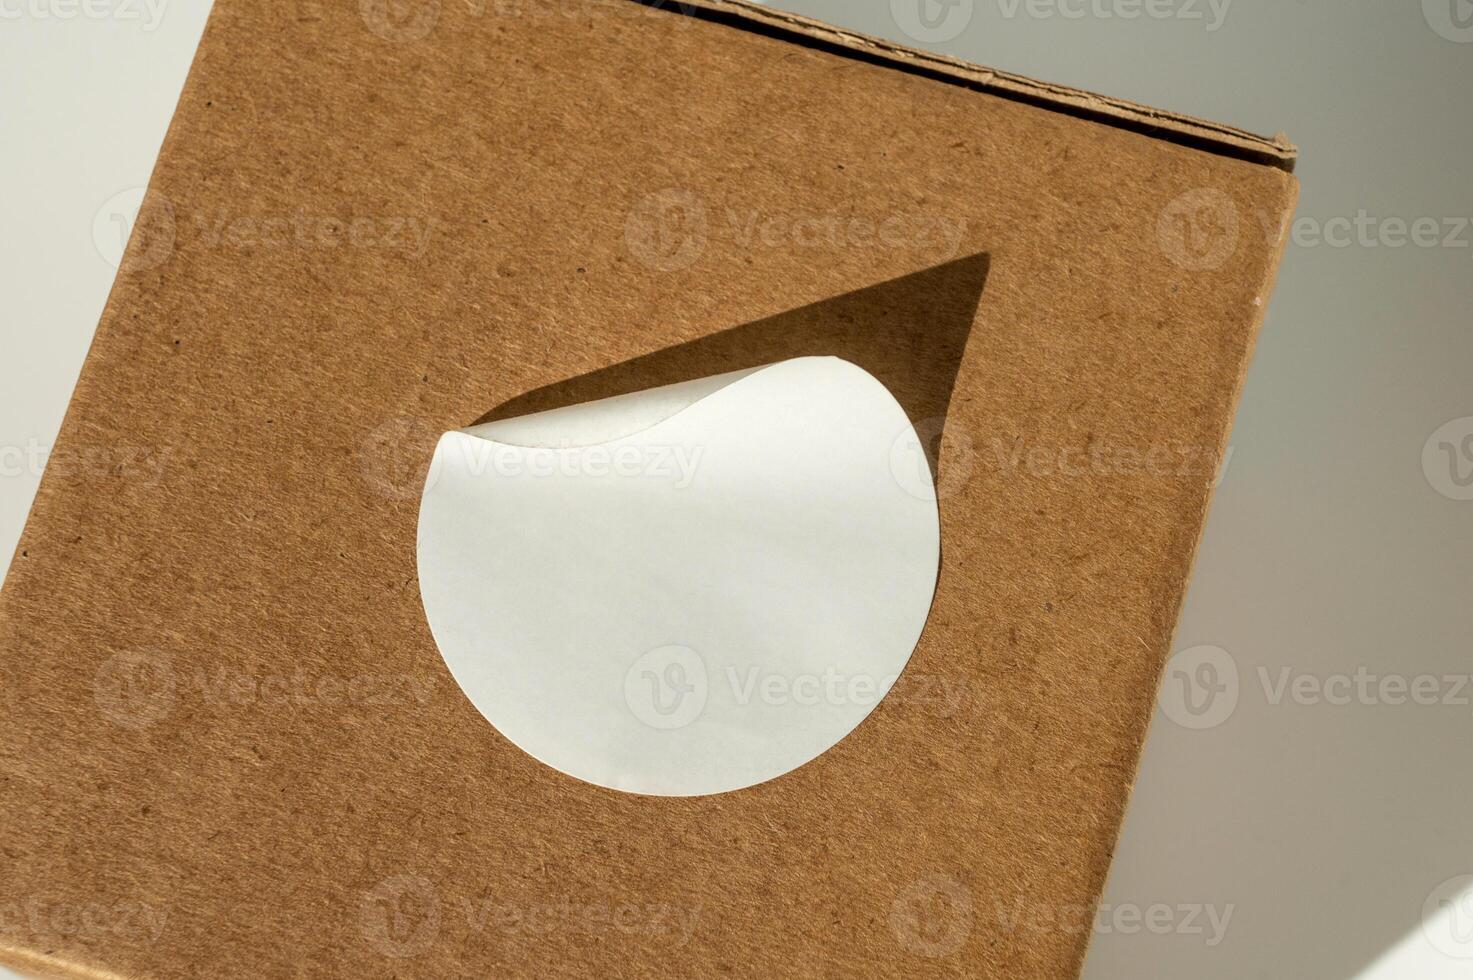 braun Karton Box mit kreisförmig Weiß Aufkleber auf ein neutral Hintergrund. foto